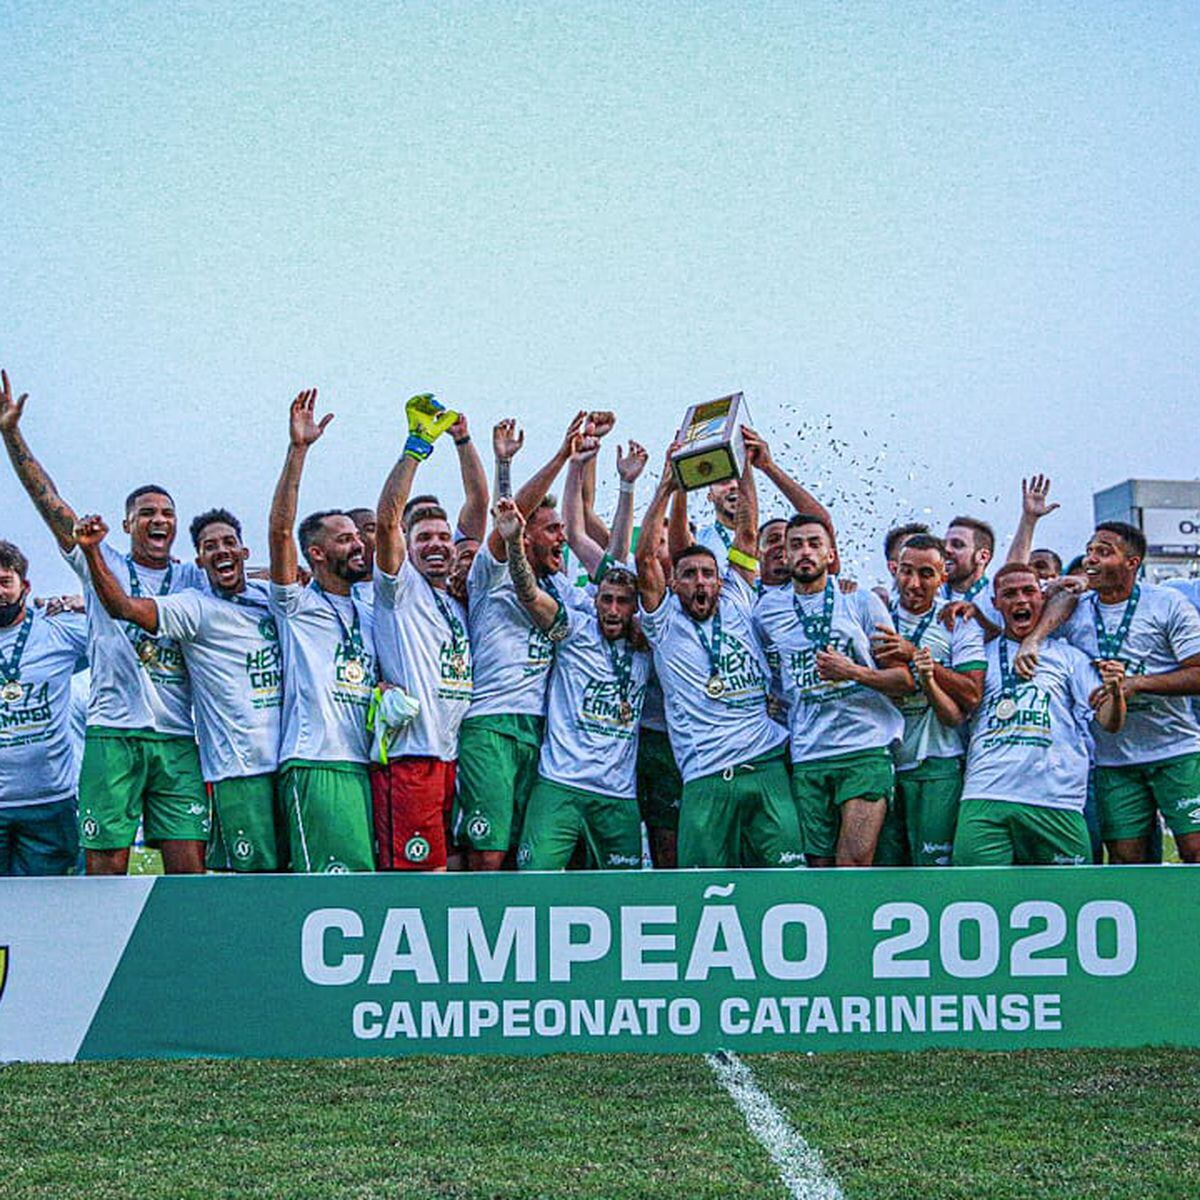 Goleiro do Brusque disputa a décima final de campeonato na carreira -  EsporteSC